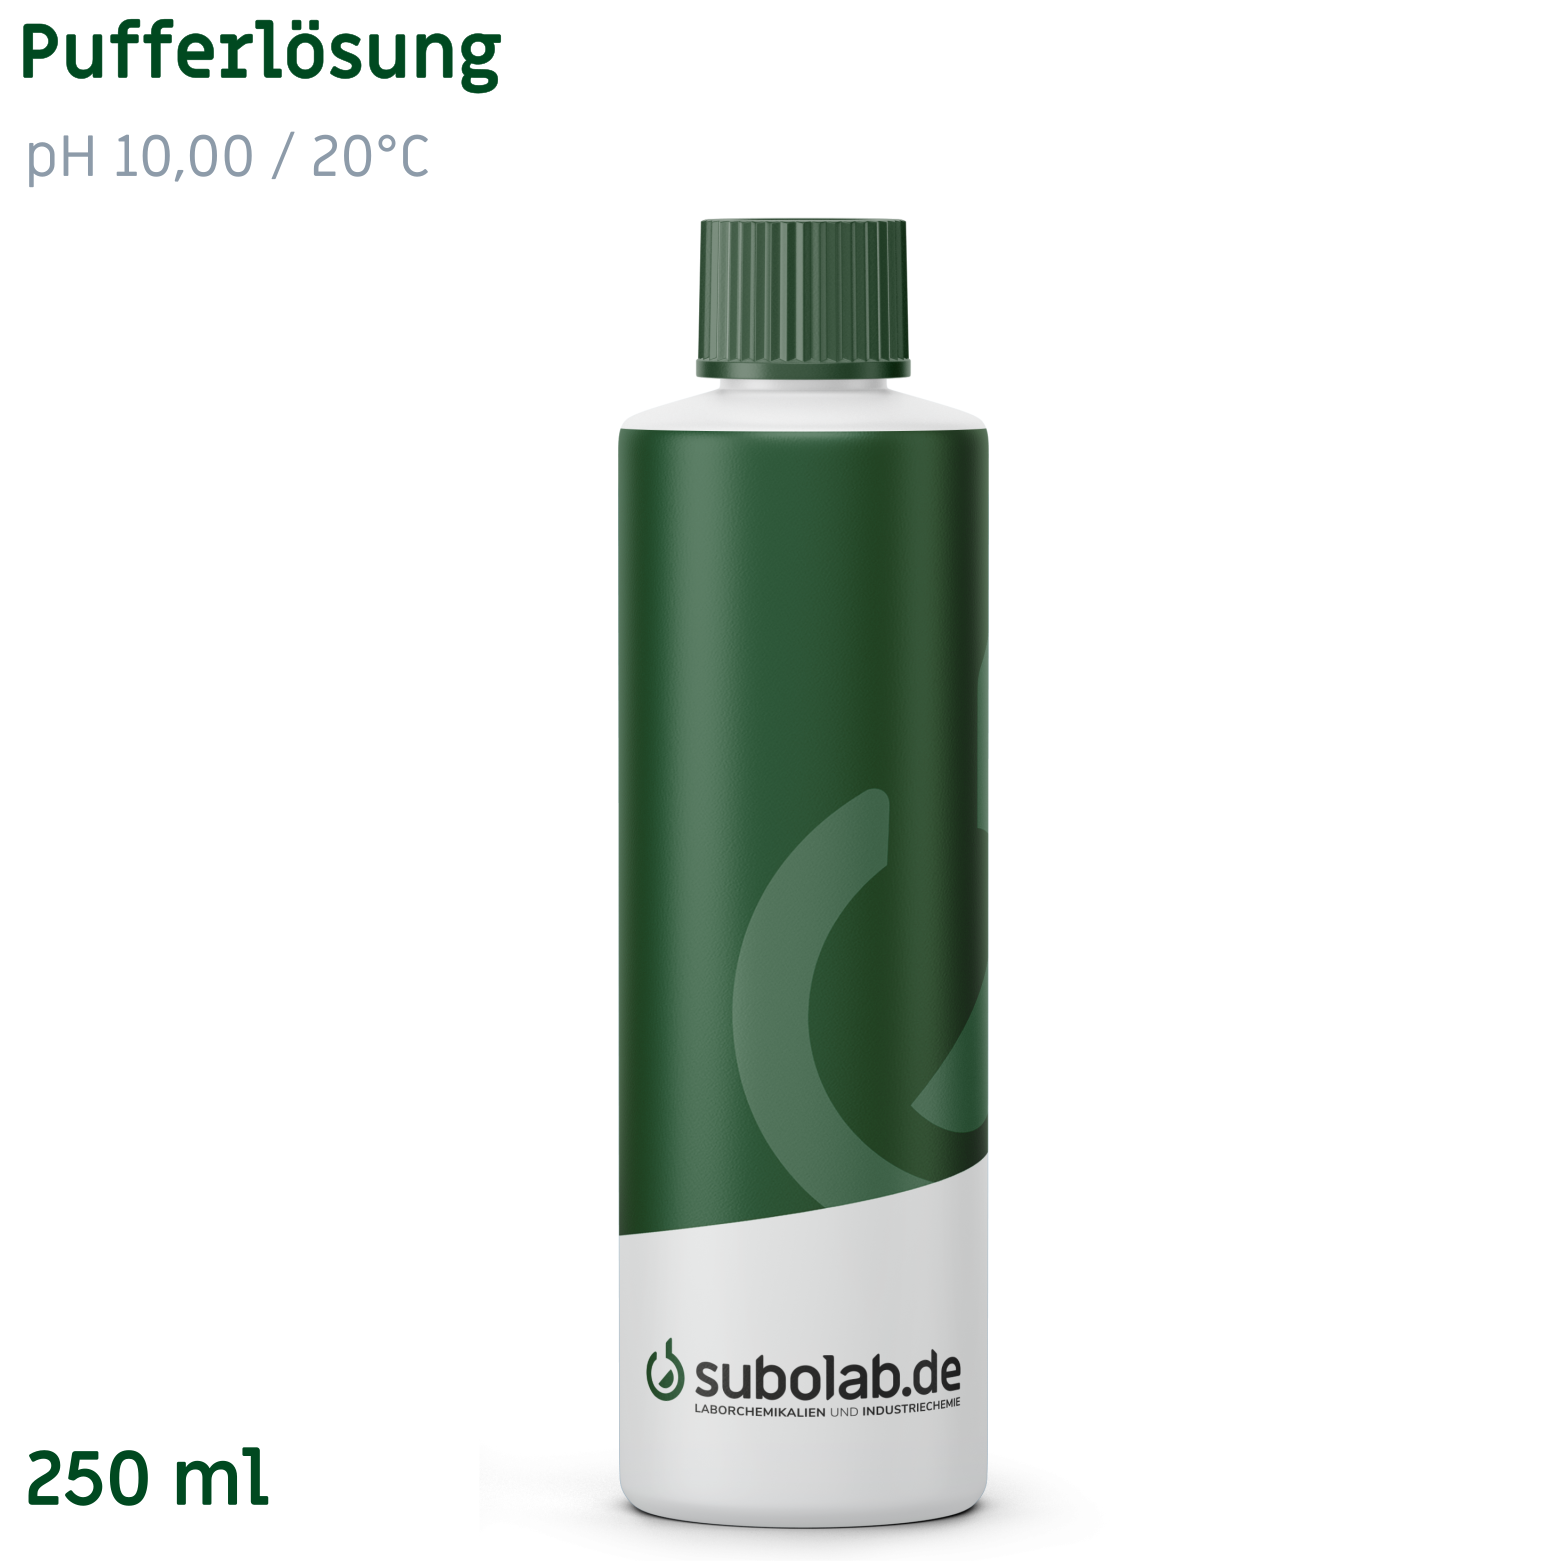 Bild von Pufferlösung pH 10,00 / 20°C (Borsäure, Kaliumchlorid, Natronlauge) (250 ml)